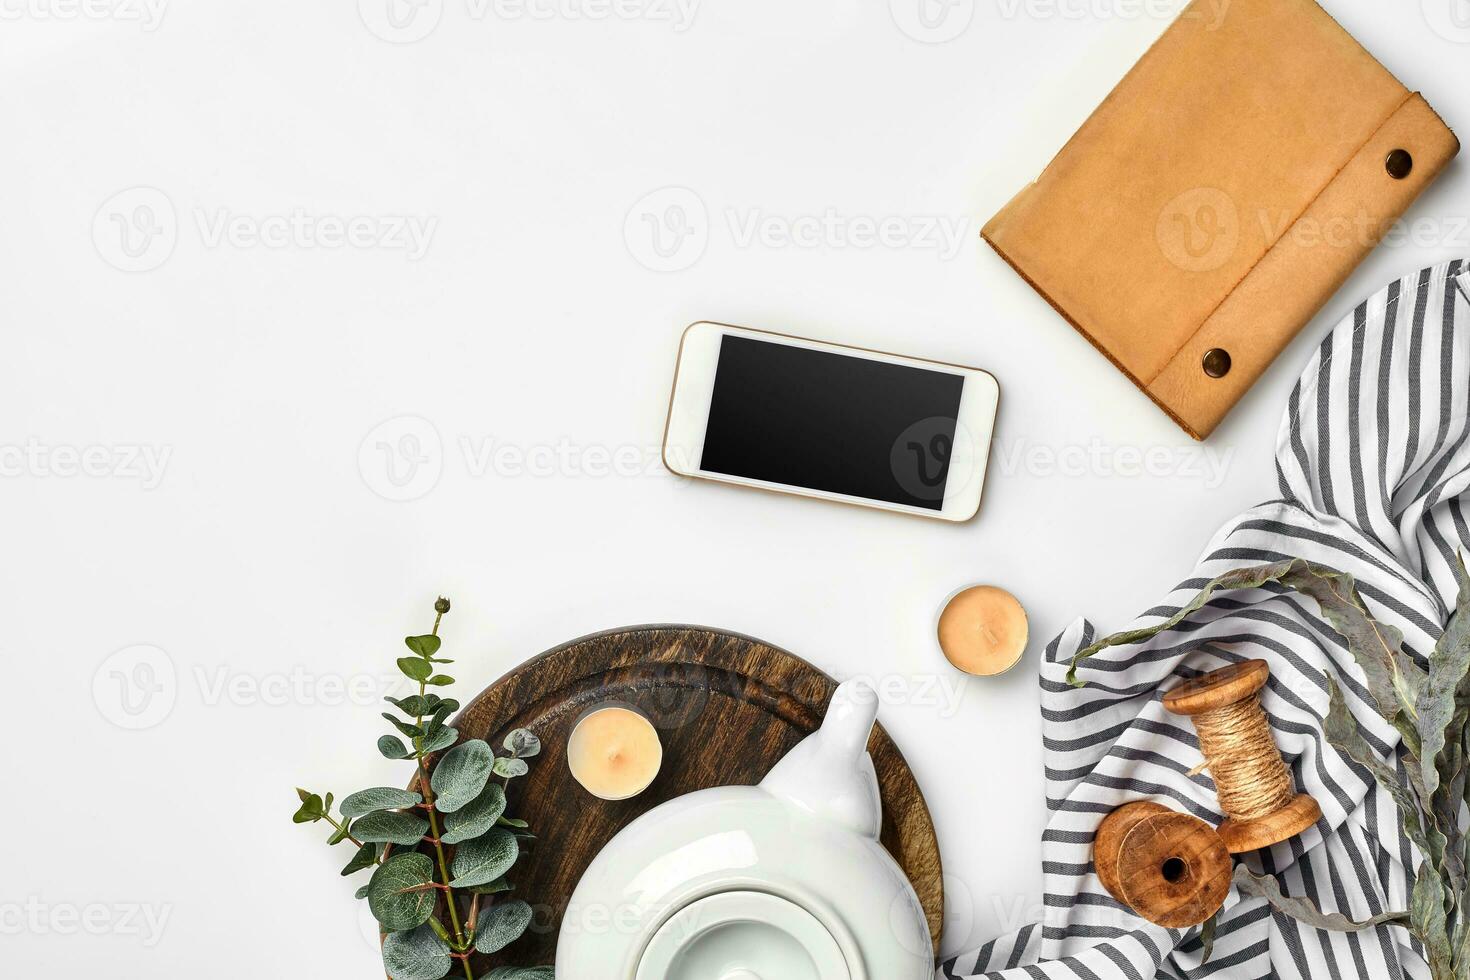 immer noch Leben mit Tee Tasse und das Inhalt von ein Arbeitsplatz zusammengesetzt. anders Objekte auf Weiß Tisch. eben legen foto